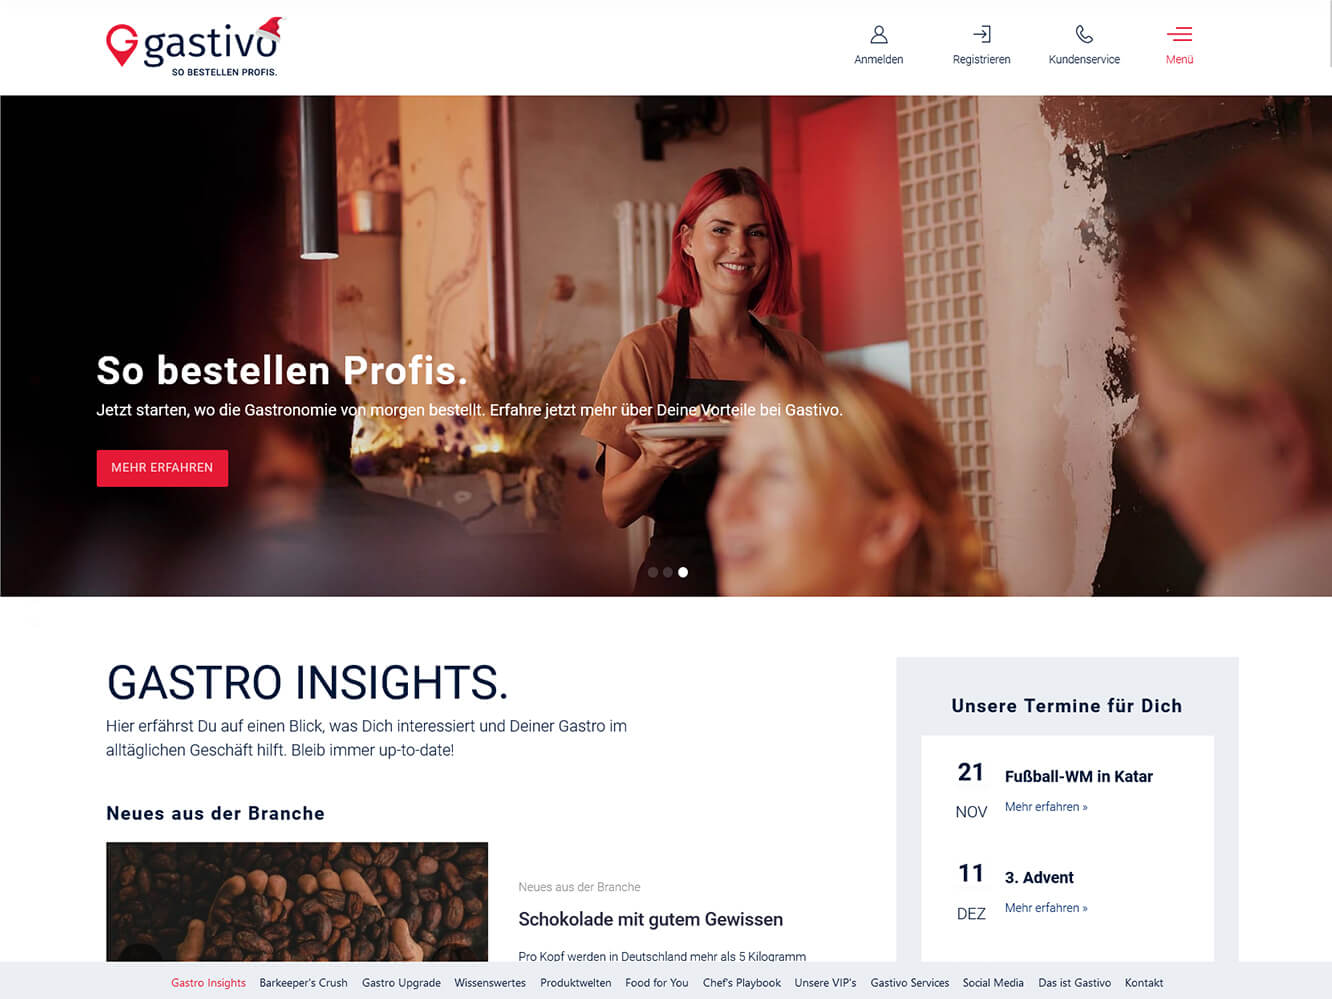  B2B Online Shop für die Gastro-Branche gastivo.de